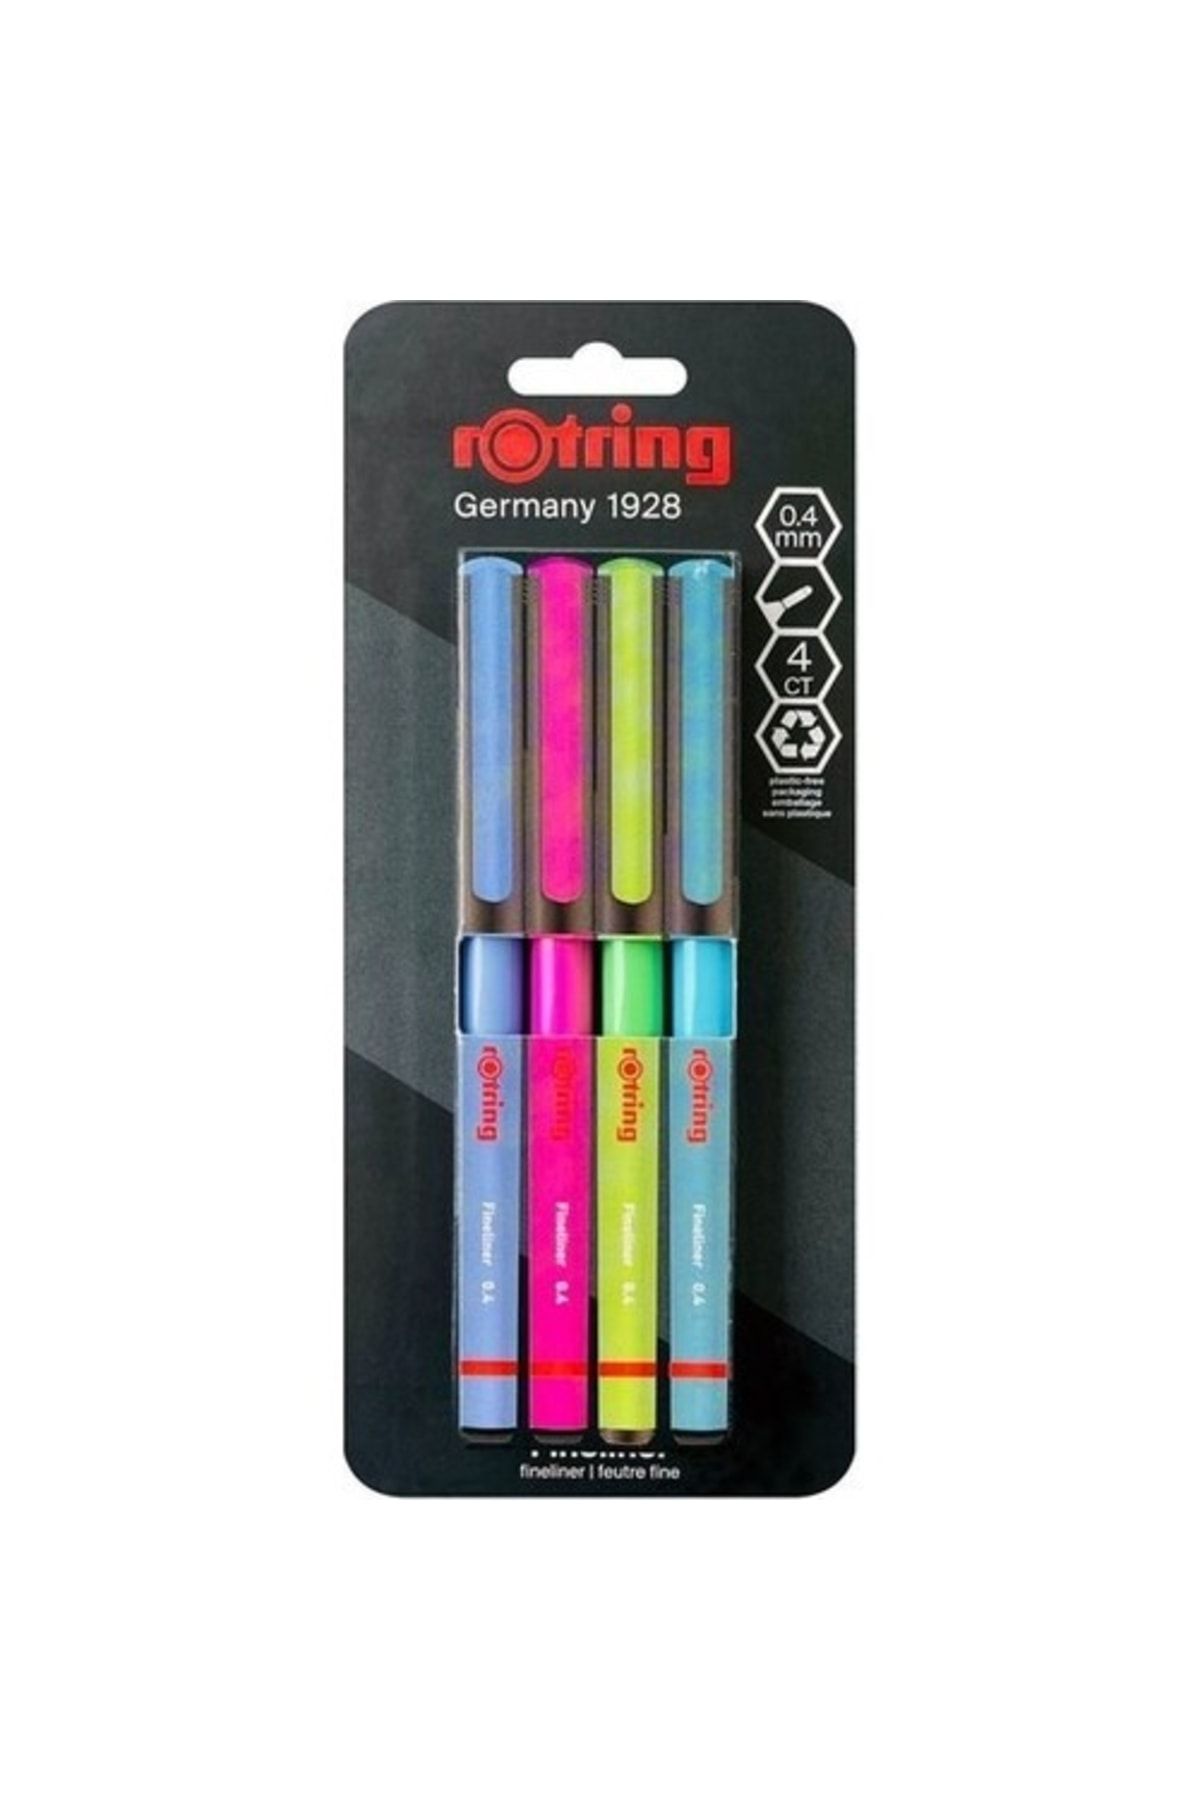 Rotring Fineliner Ince Keçe Uçlu Kalem 4'lü Canlı Renkler